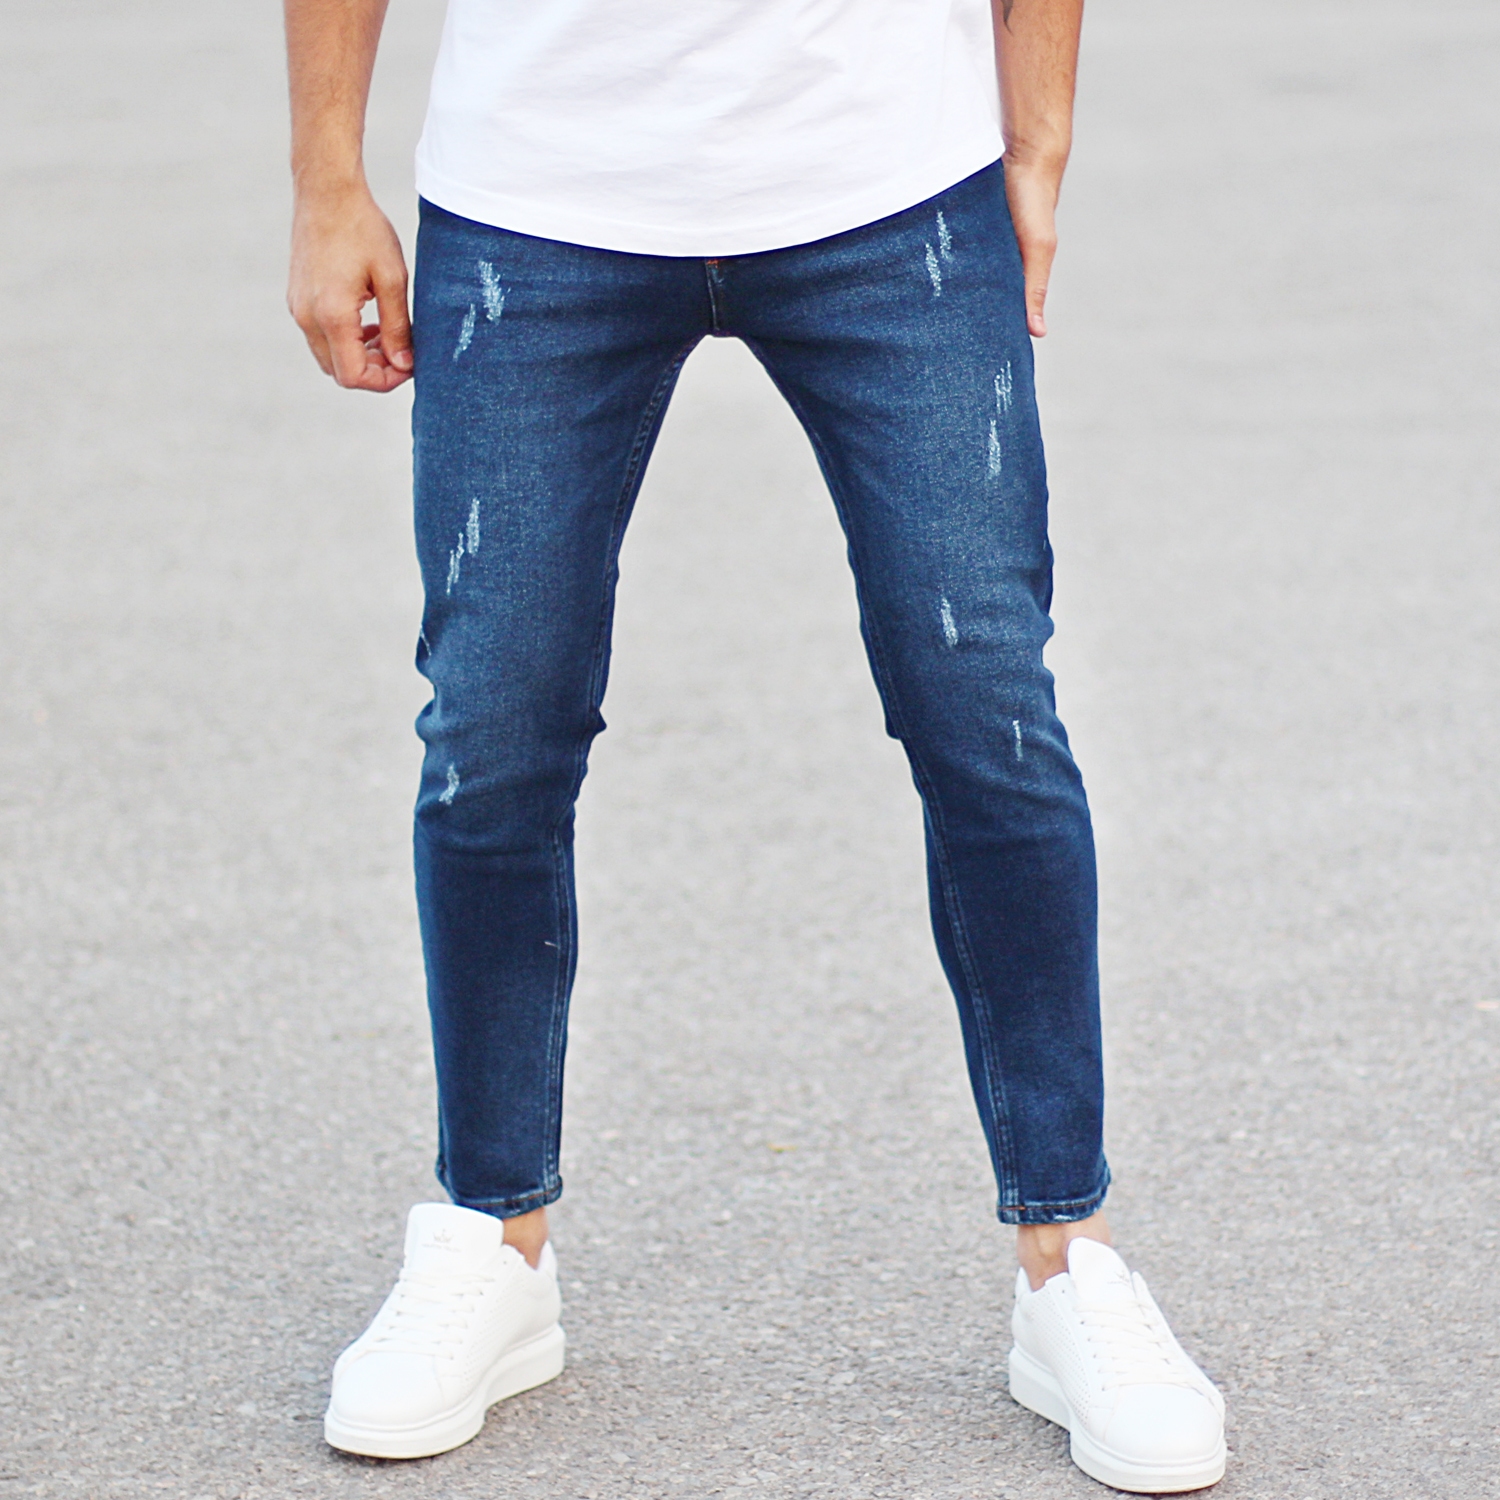 men's blue jeans style